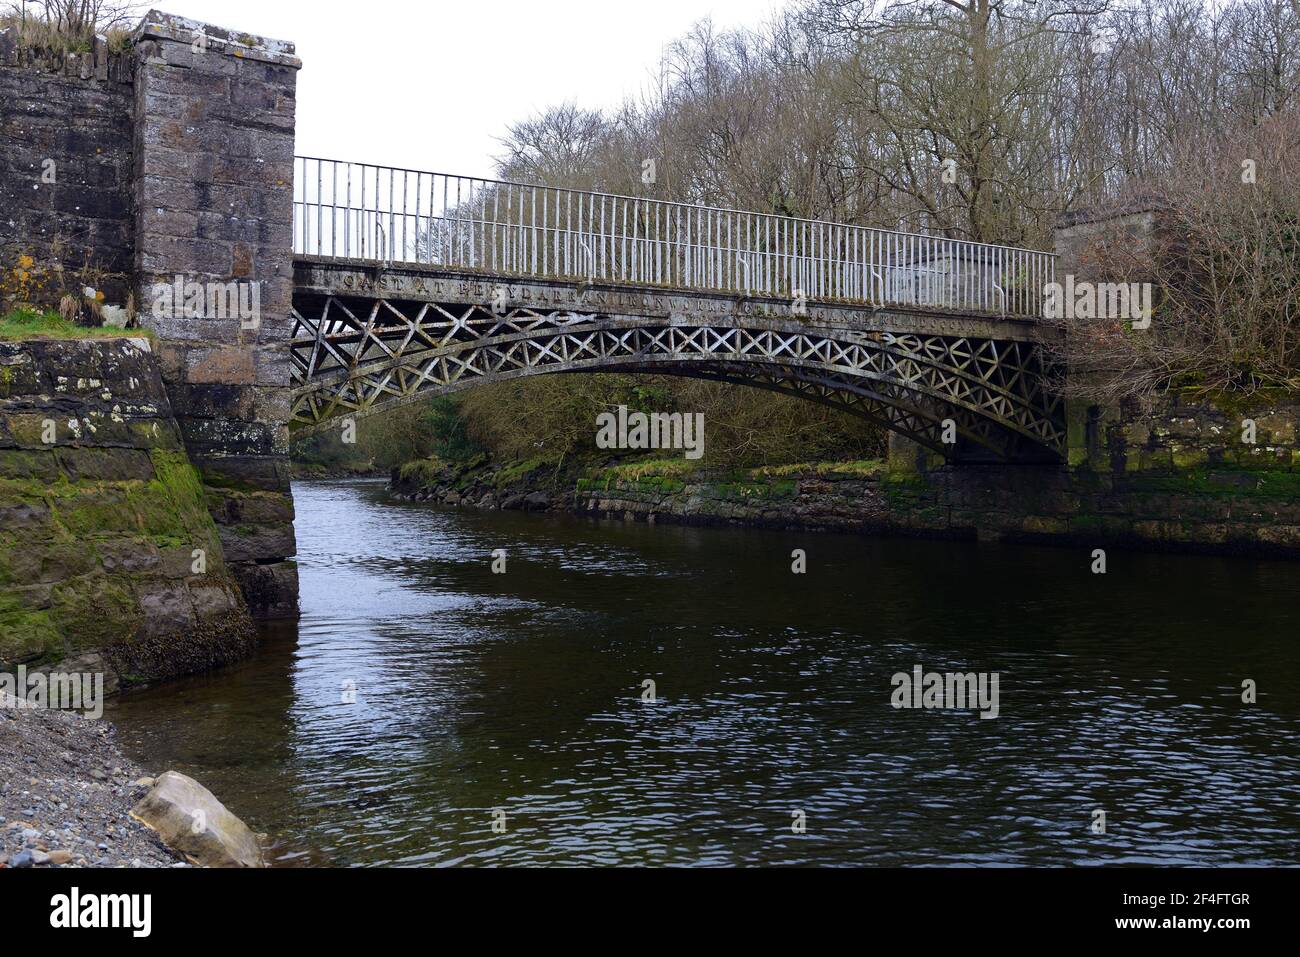 Le pont Aber-Ogwen se trouve à l'embouchure de la rivière Ogwen, dans le détroit de Menai. Ce pont en fonte a été construit en 1821 à l'usine sidérurgique Penydarren. Banque D'Images